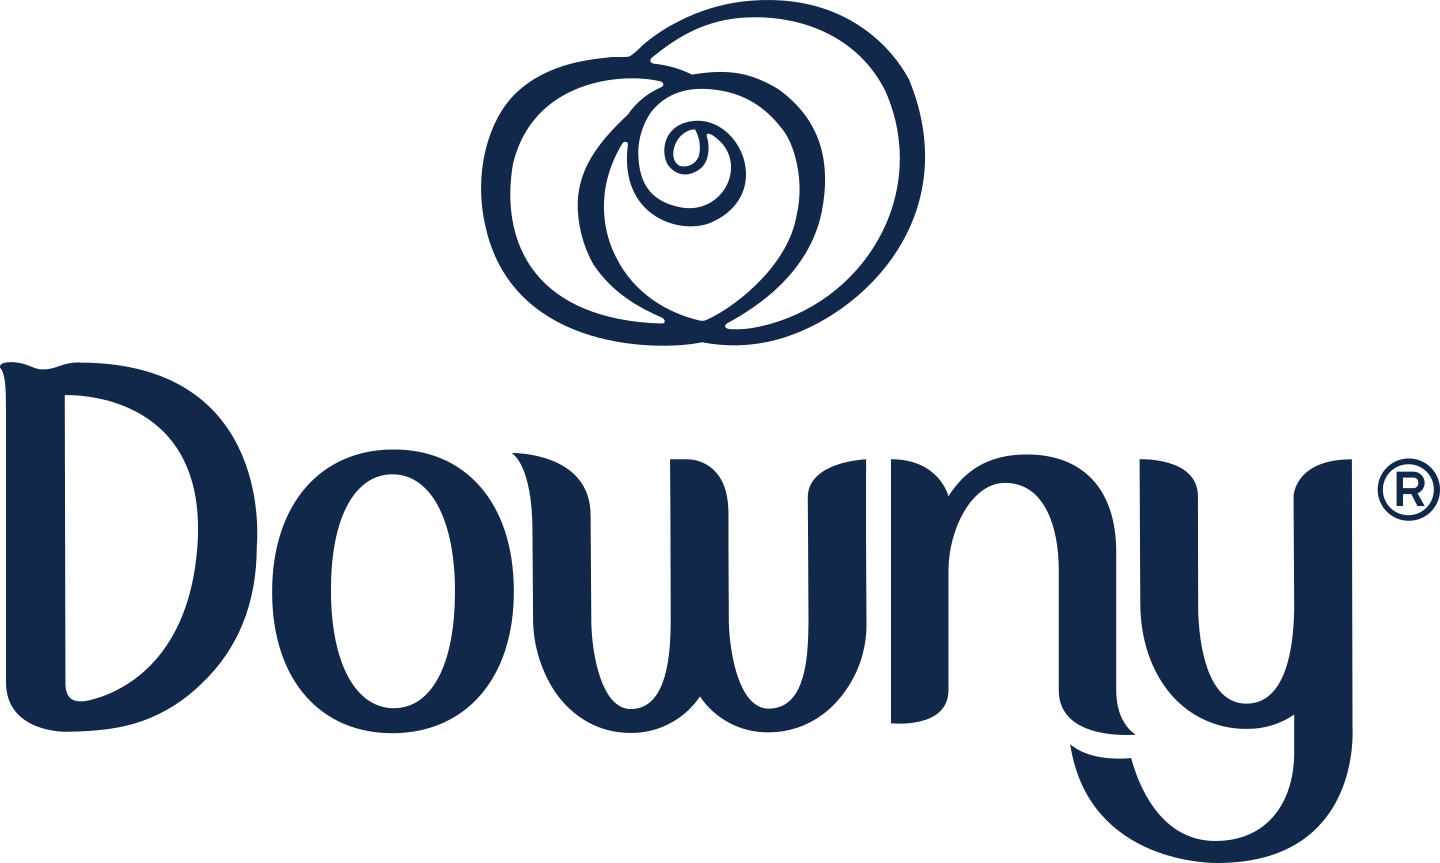 downy logo 2 - Downy Logo